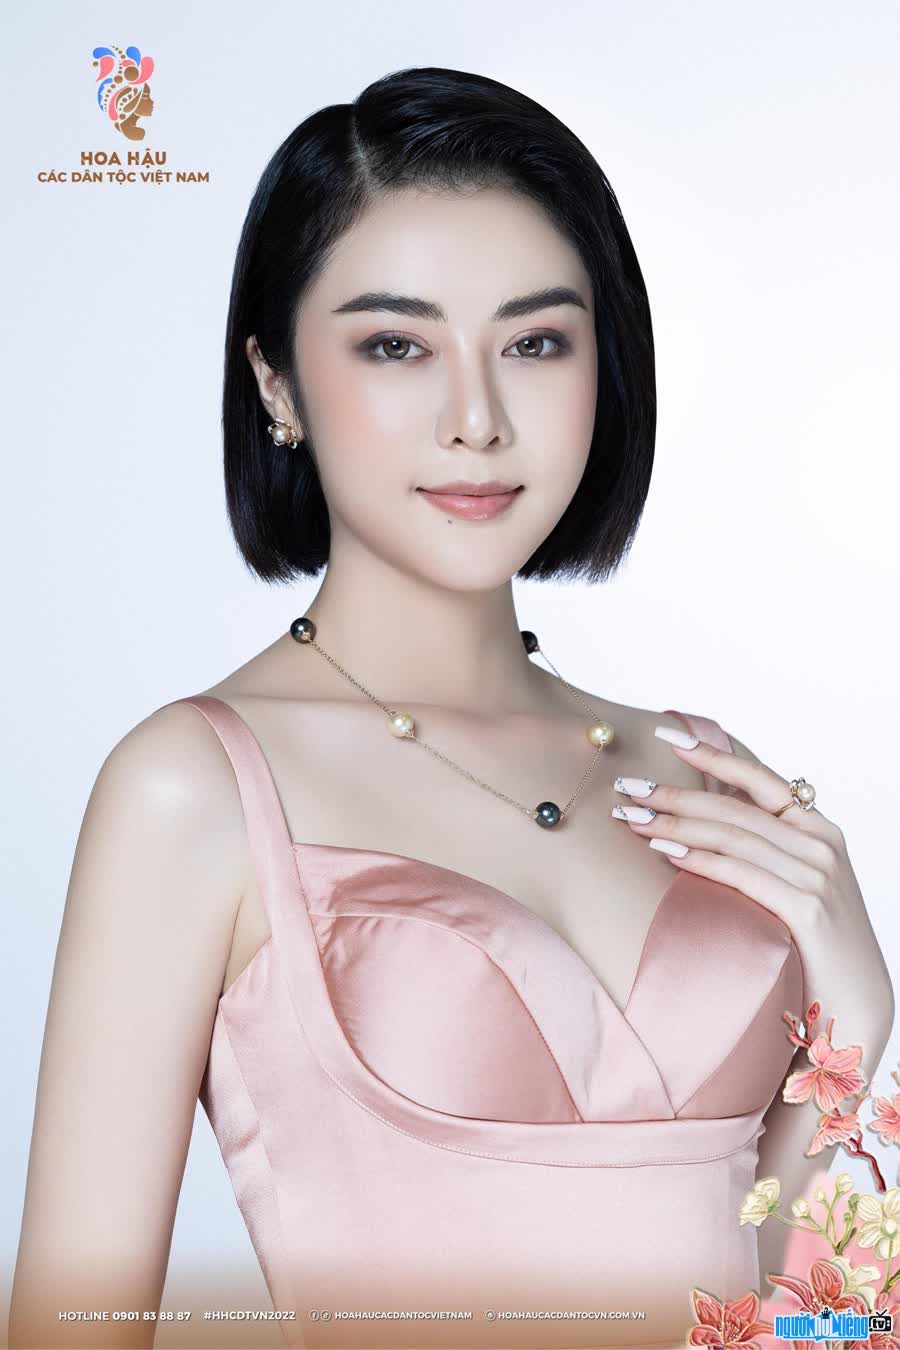 Hồng Diễm là một thí sinh của cuộc thi "Hoa hậu các Dân tộc Việt Nam 2022"